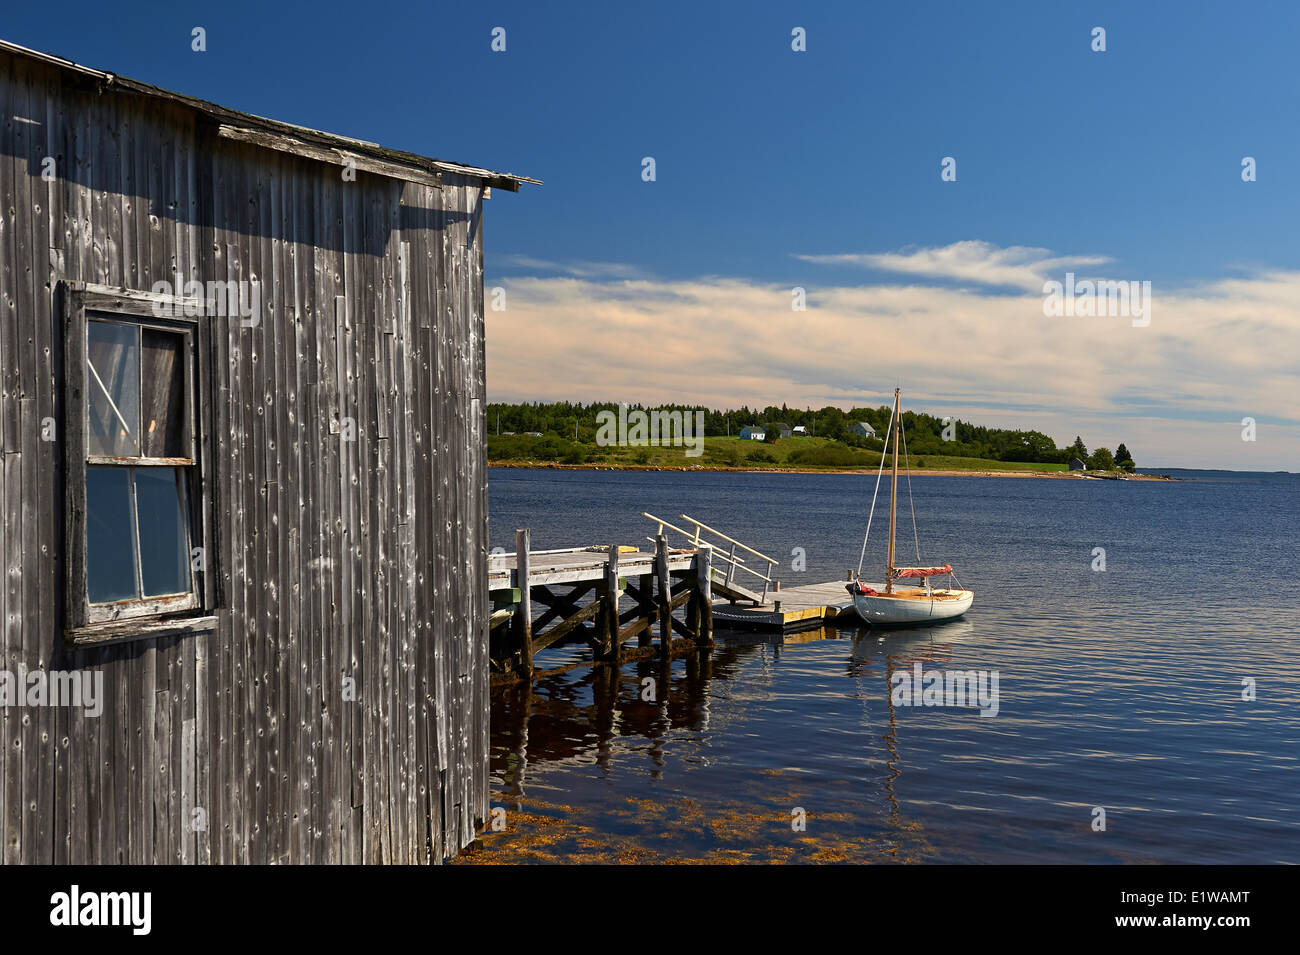 Small Sailboat and Boat House, Indian Point near Mahone Bay, Nova Scotia, Canada Stock Photo